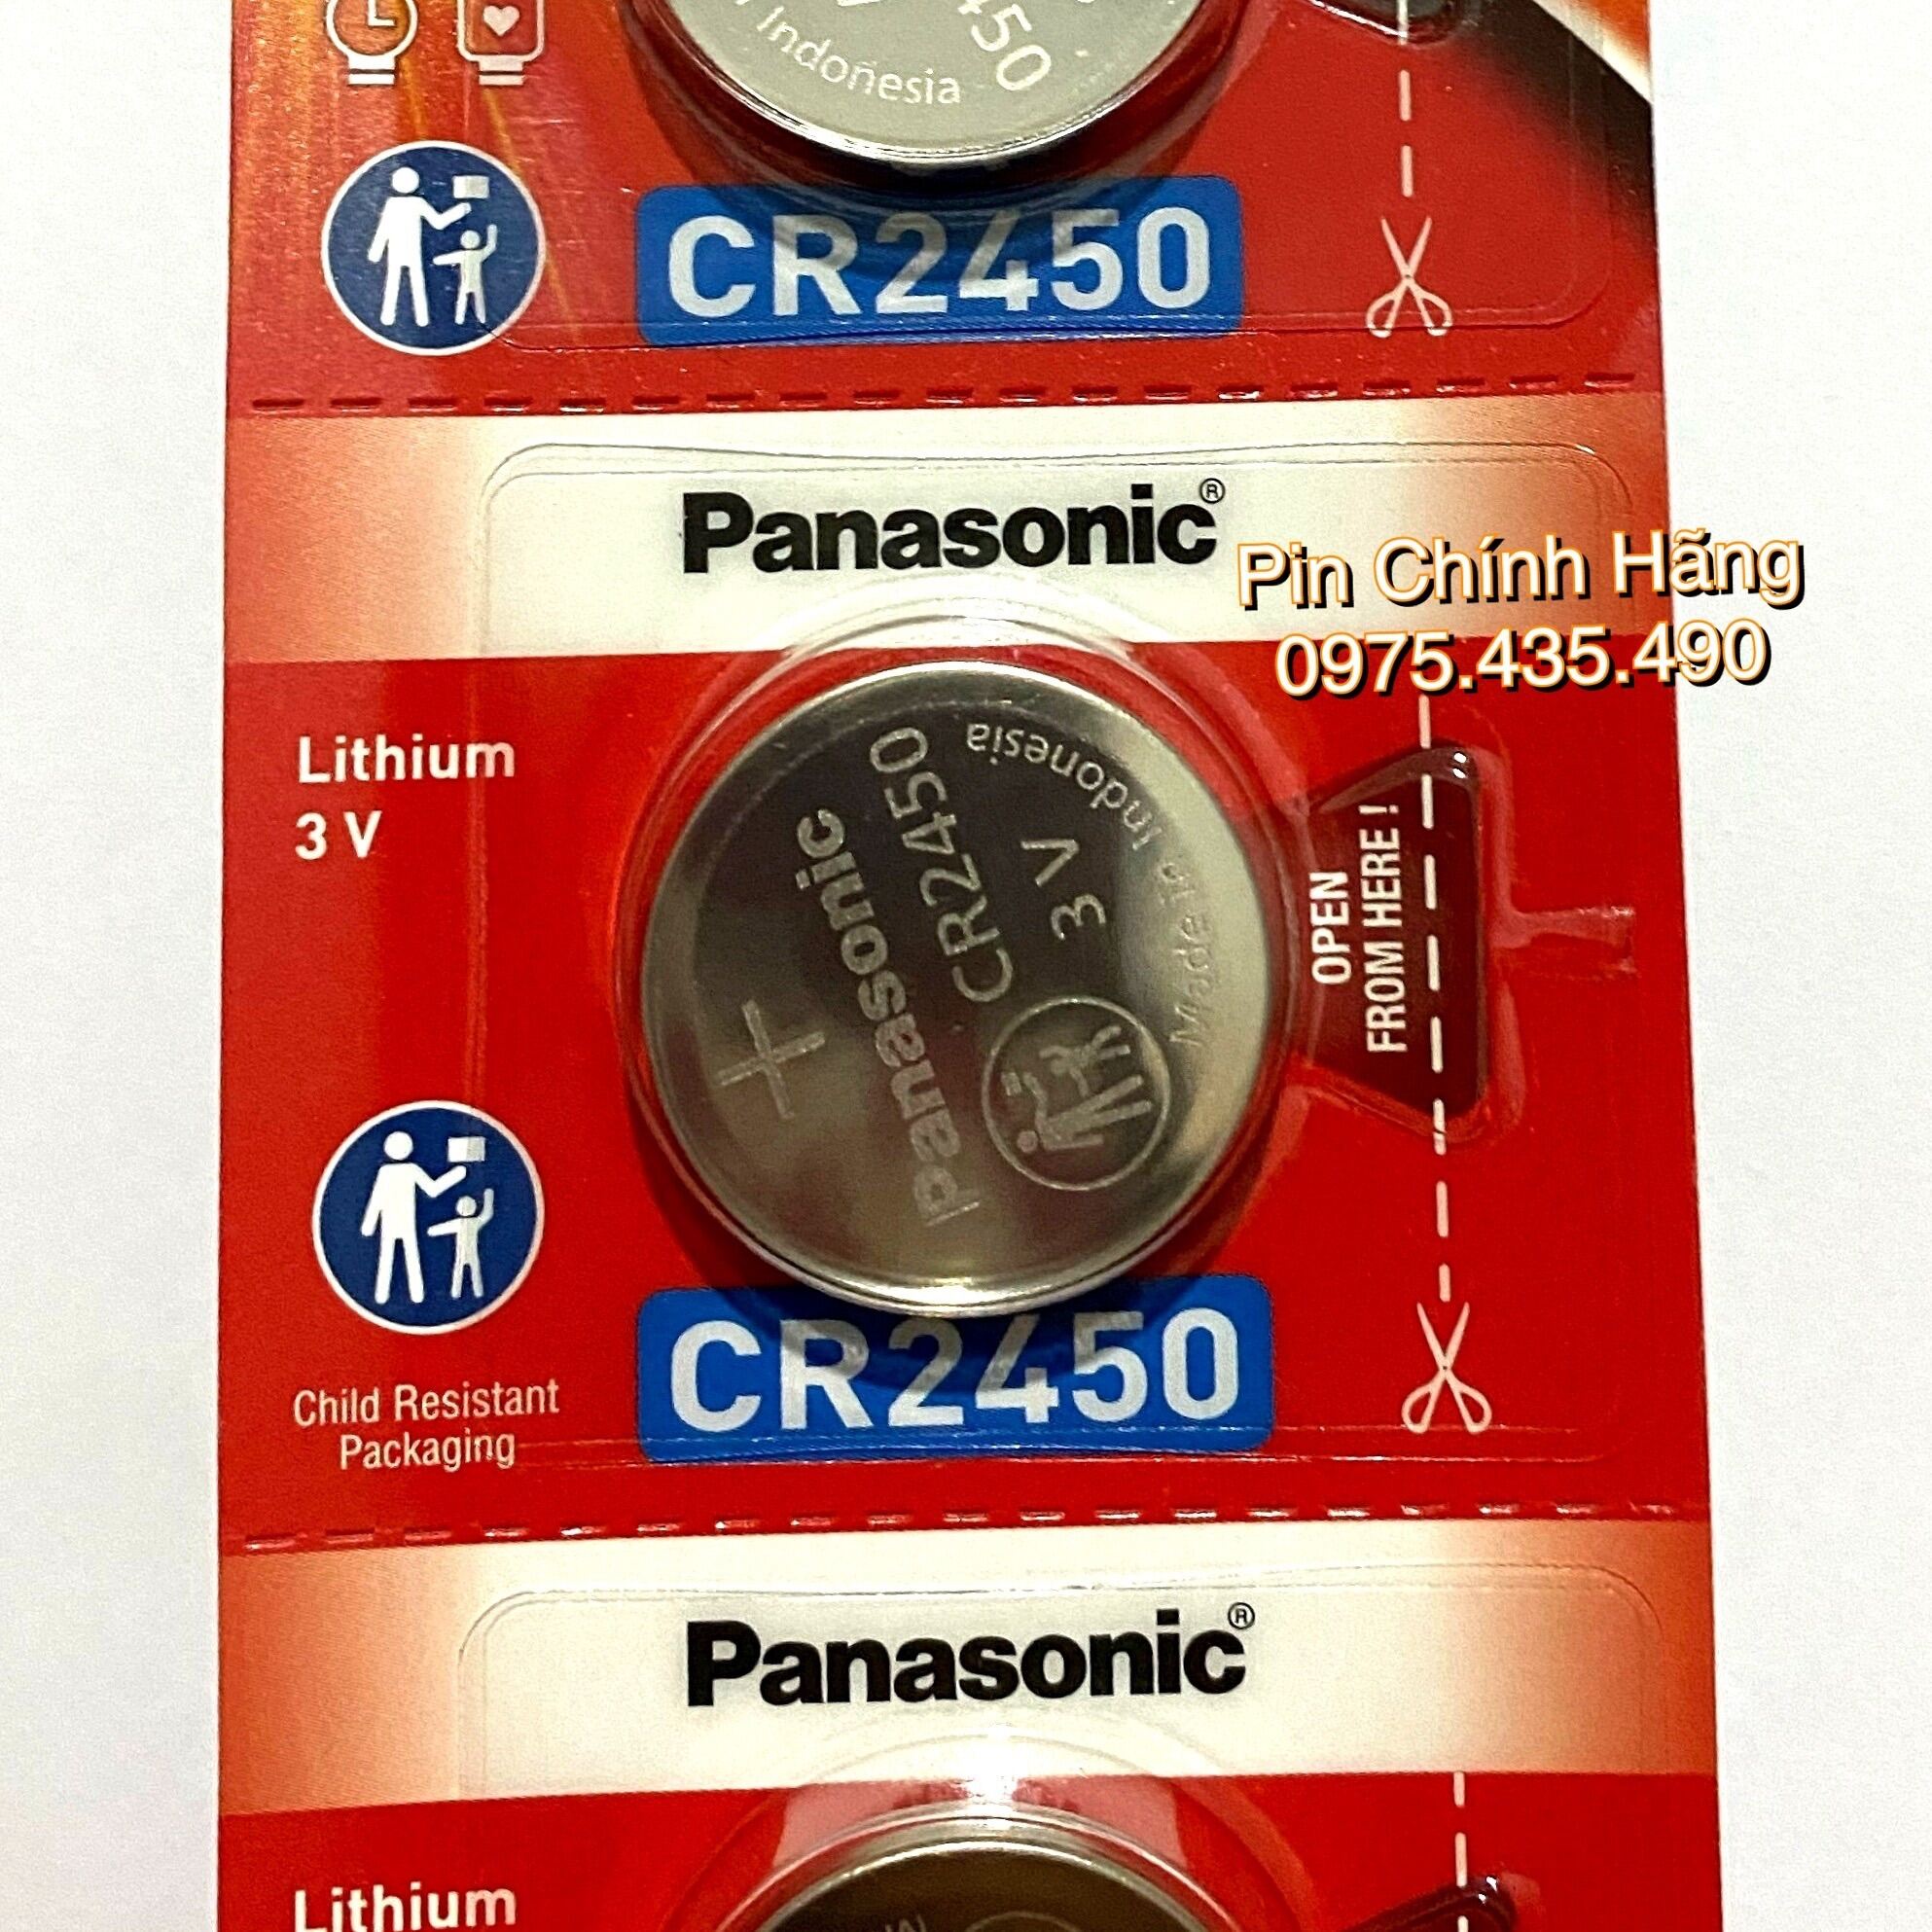 Pin CR2450 Panasonic Lithium 3V Hàng Chính Hãng Vỉ 1 Viên Made in Indonesia